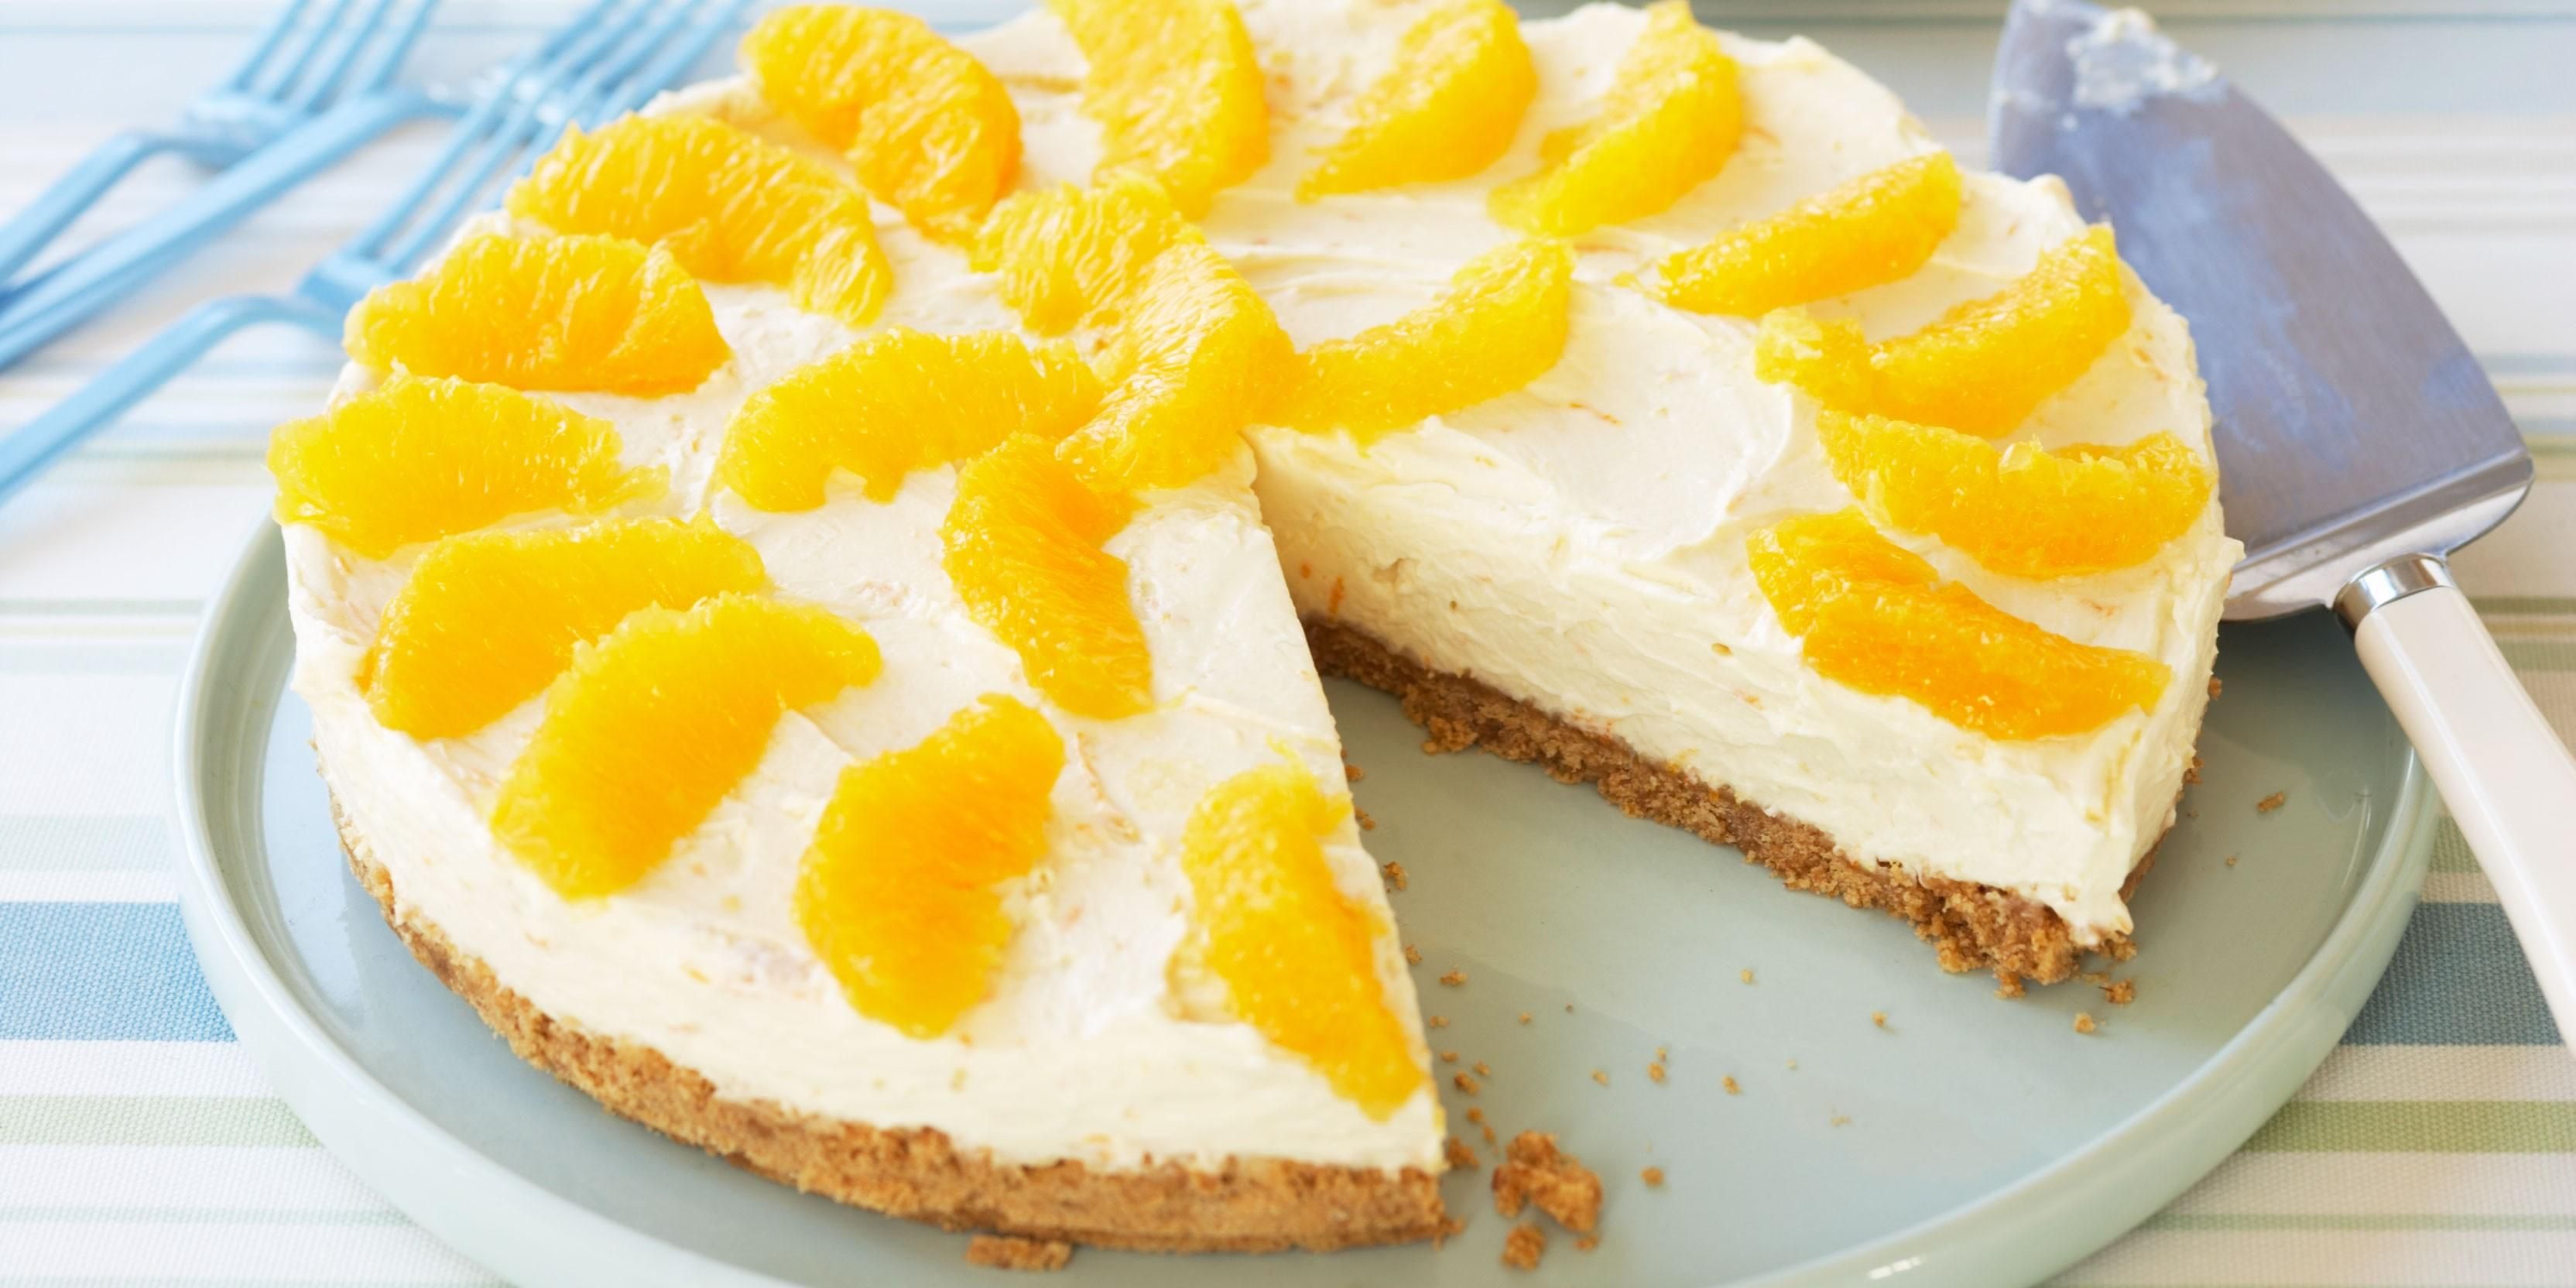 Смачний десерт без випічки: готуємо смачнючий апельсиновий чизкейк за 25 хвилин - Ідеї